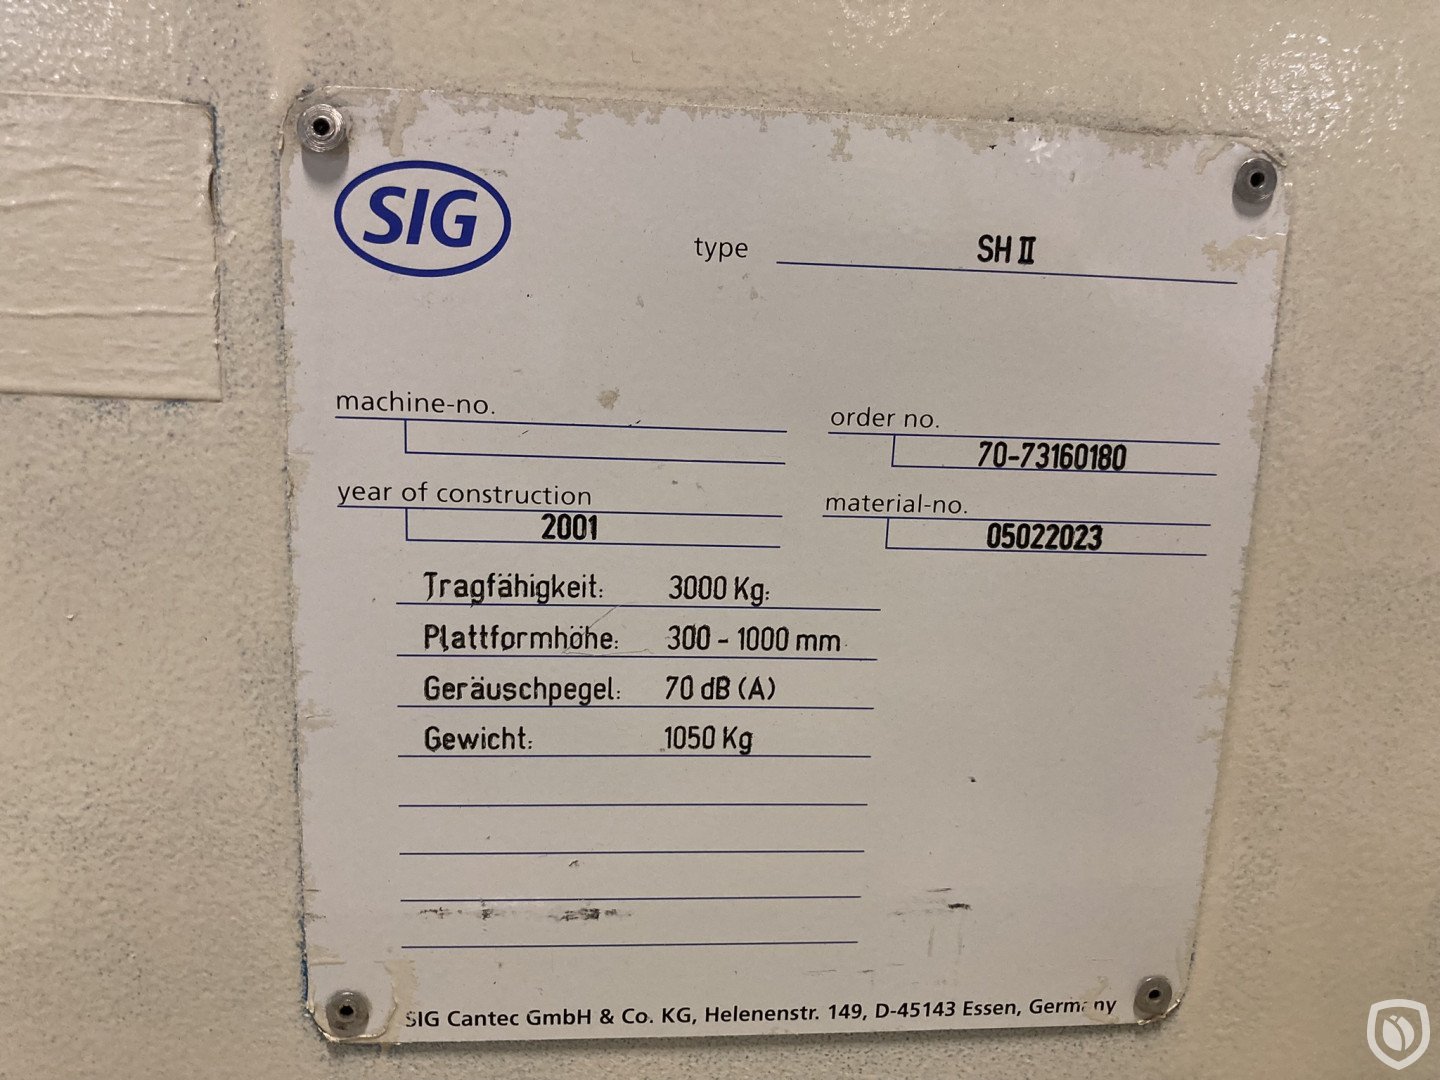 SIG SP / SH II